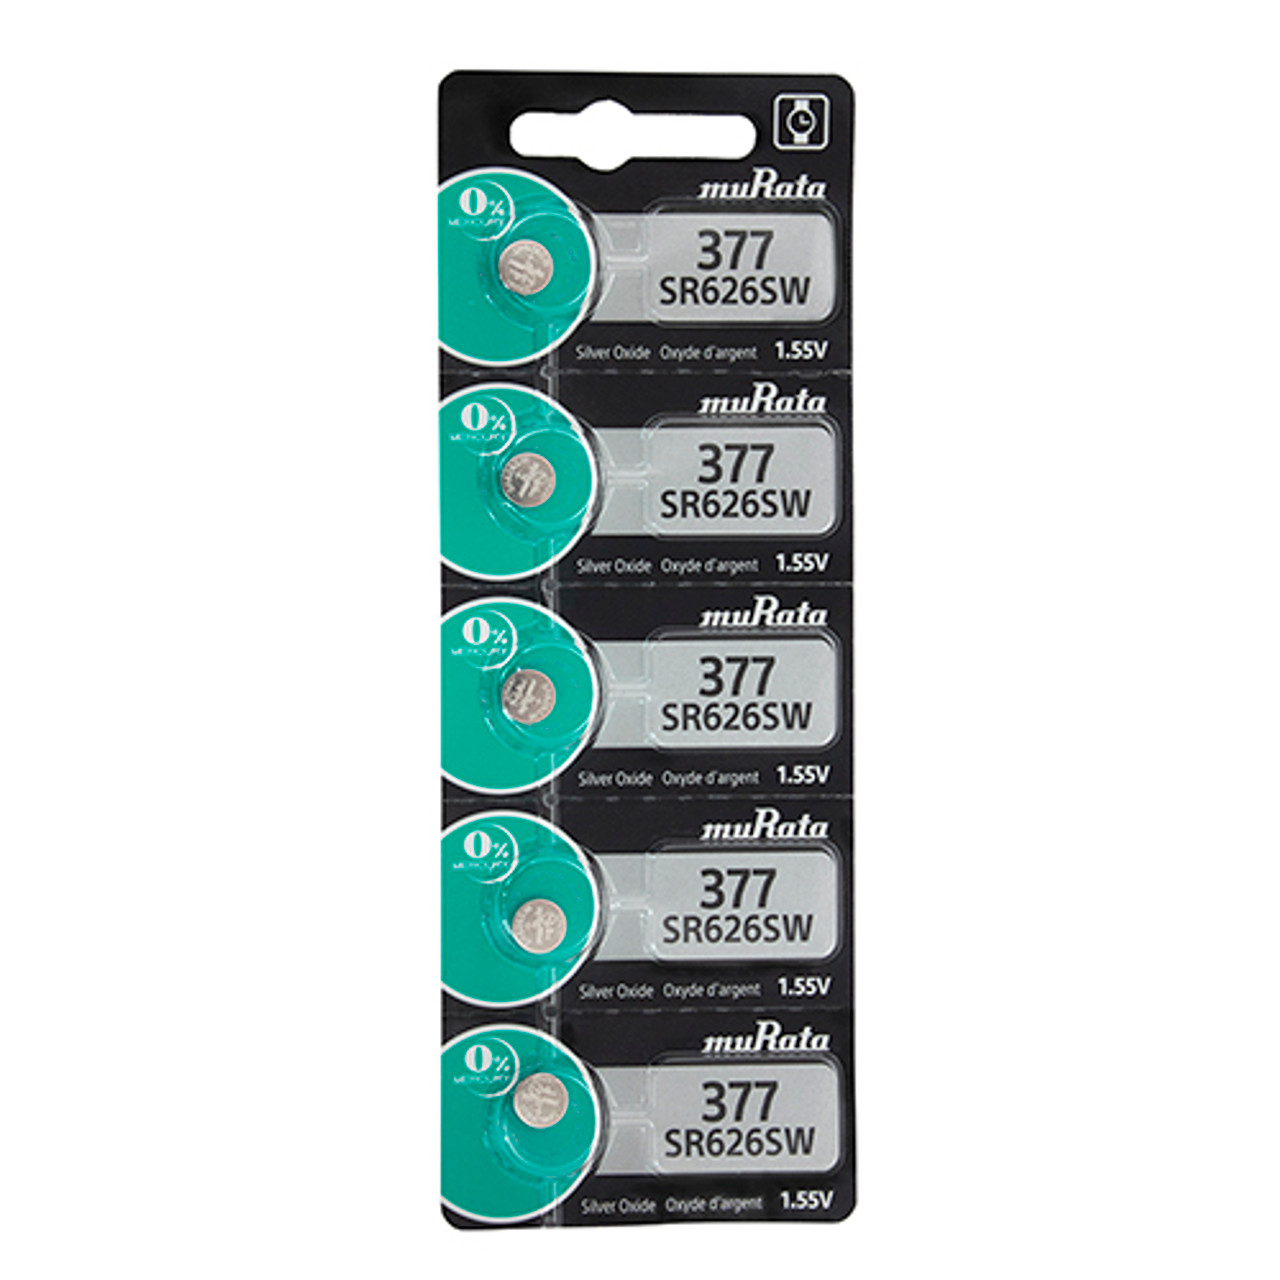 Sony® Murata Silver Oxide Watch Batteries - 377  (Pkg. of 5)